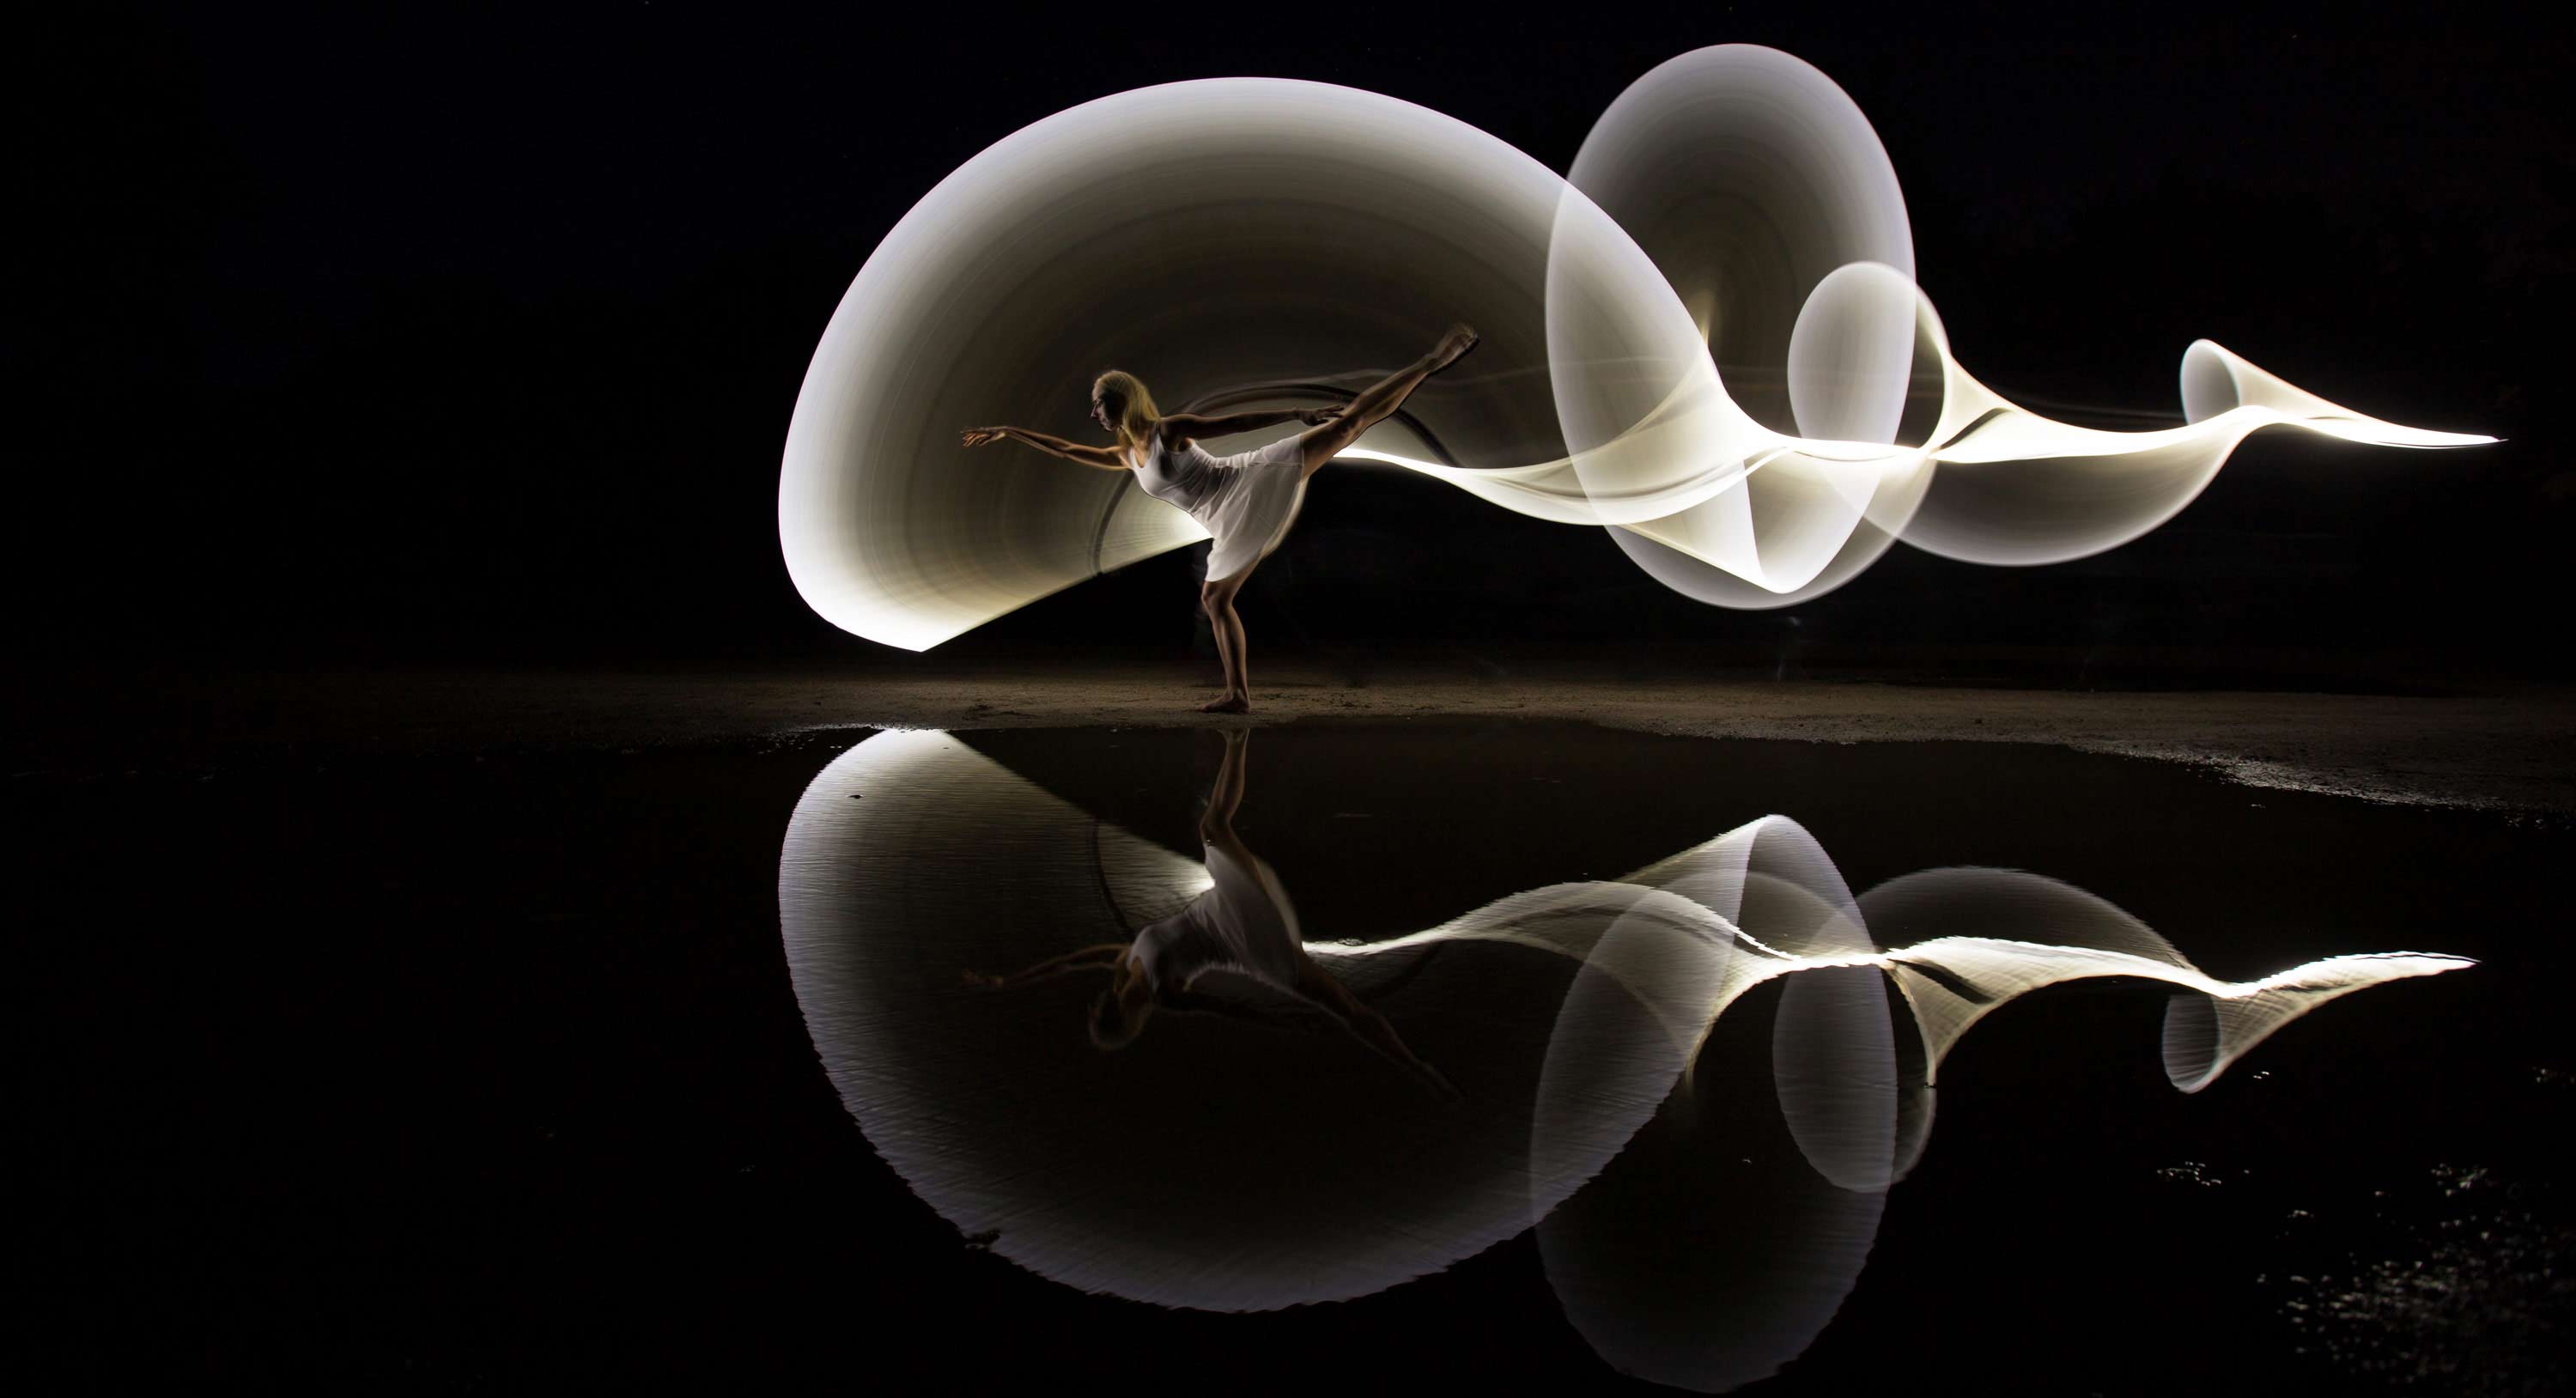 LightPainting-Gunnar-Heilmann-freehand-tube-reflection-light-dancer-001.jpg